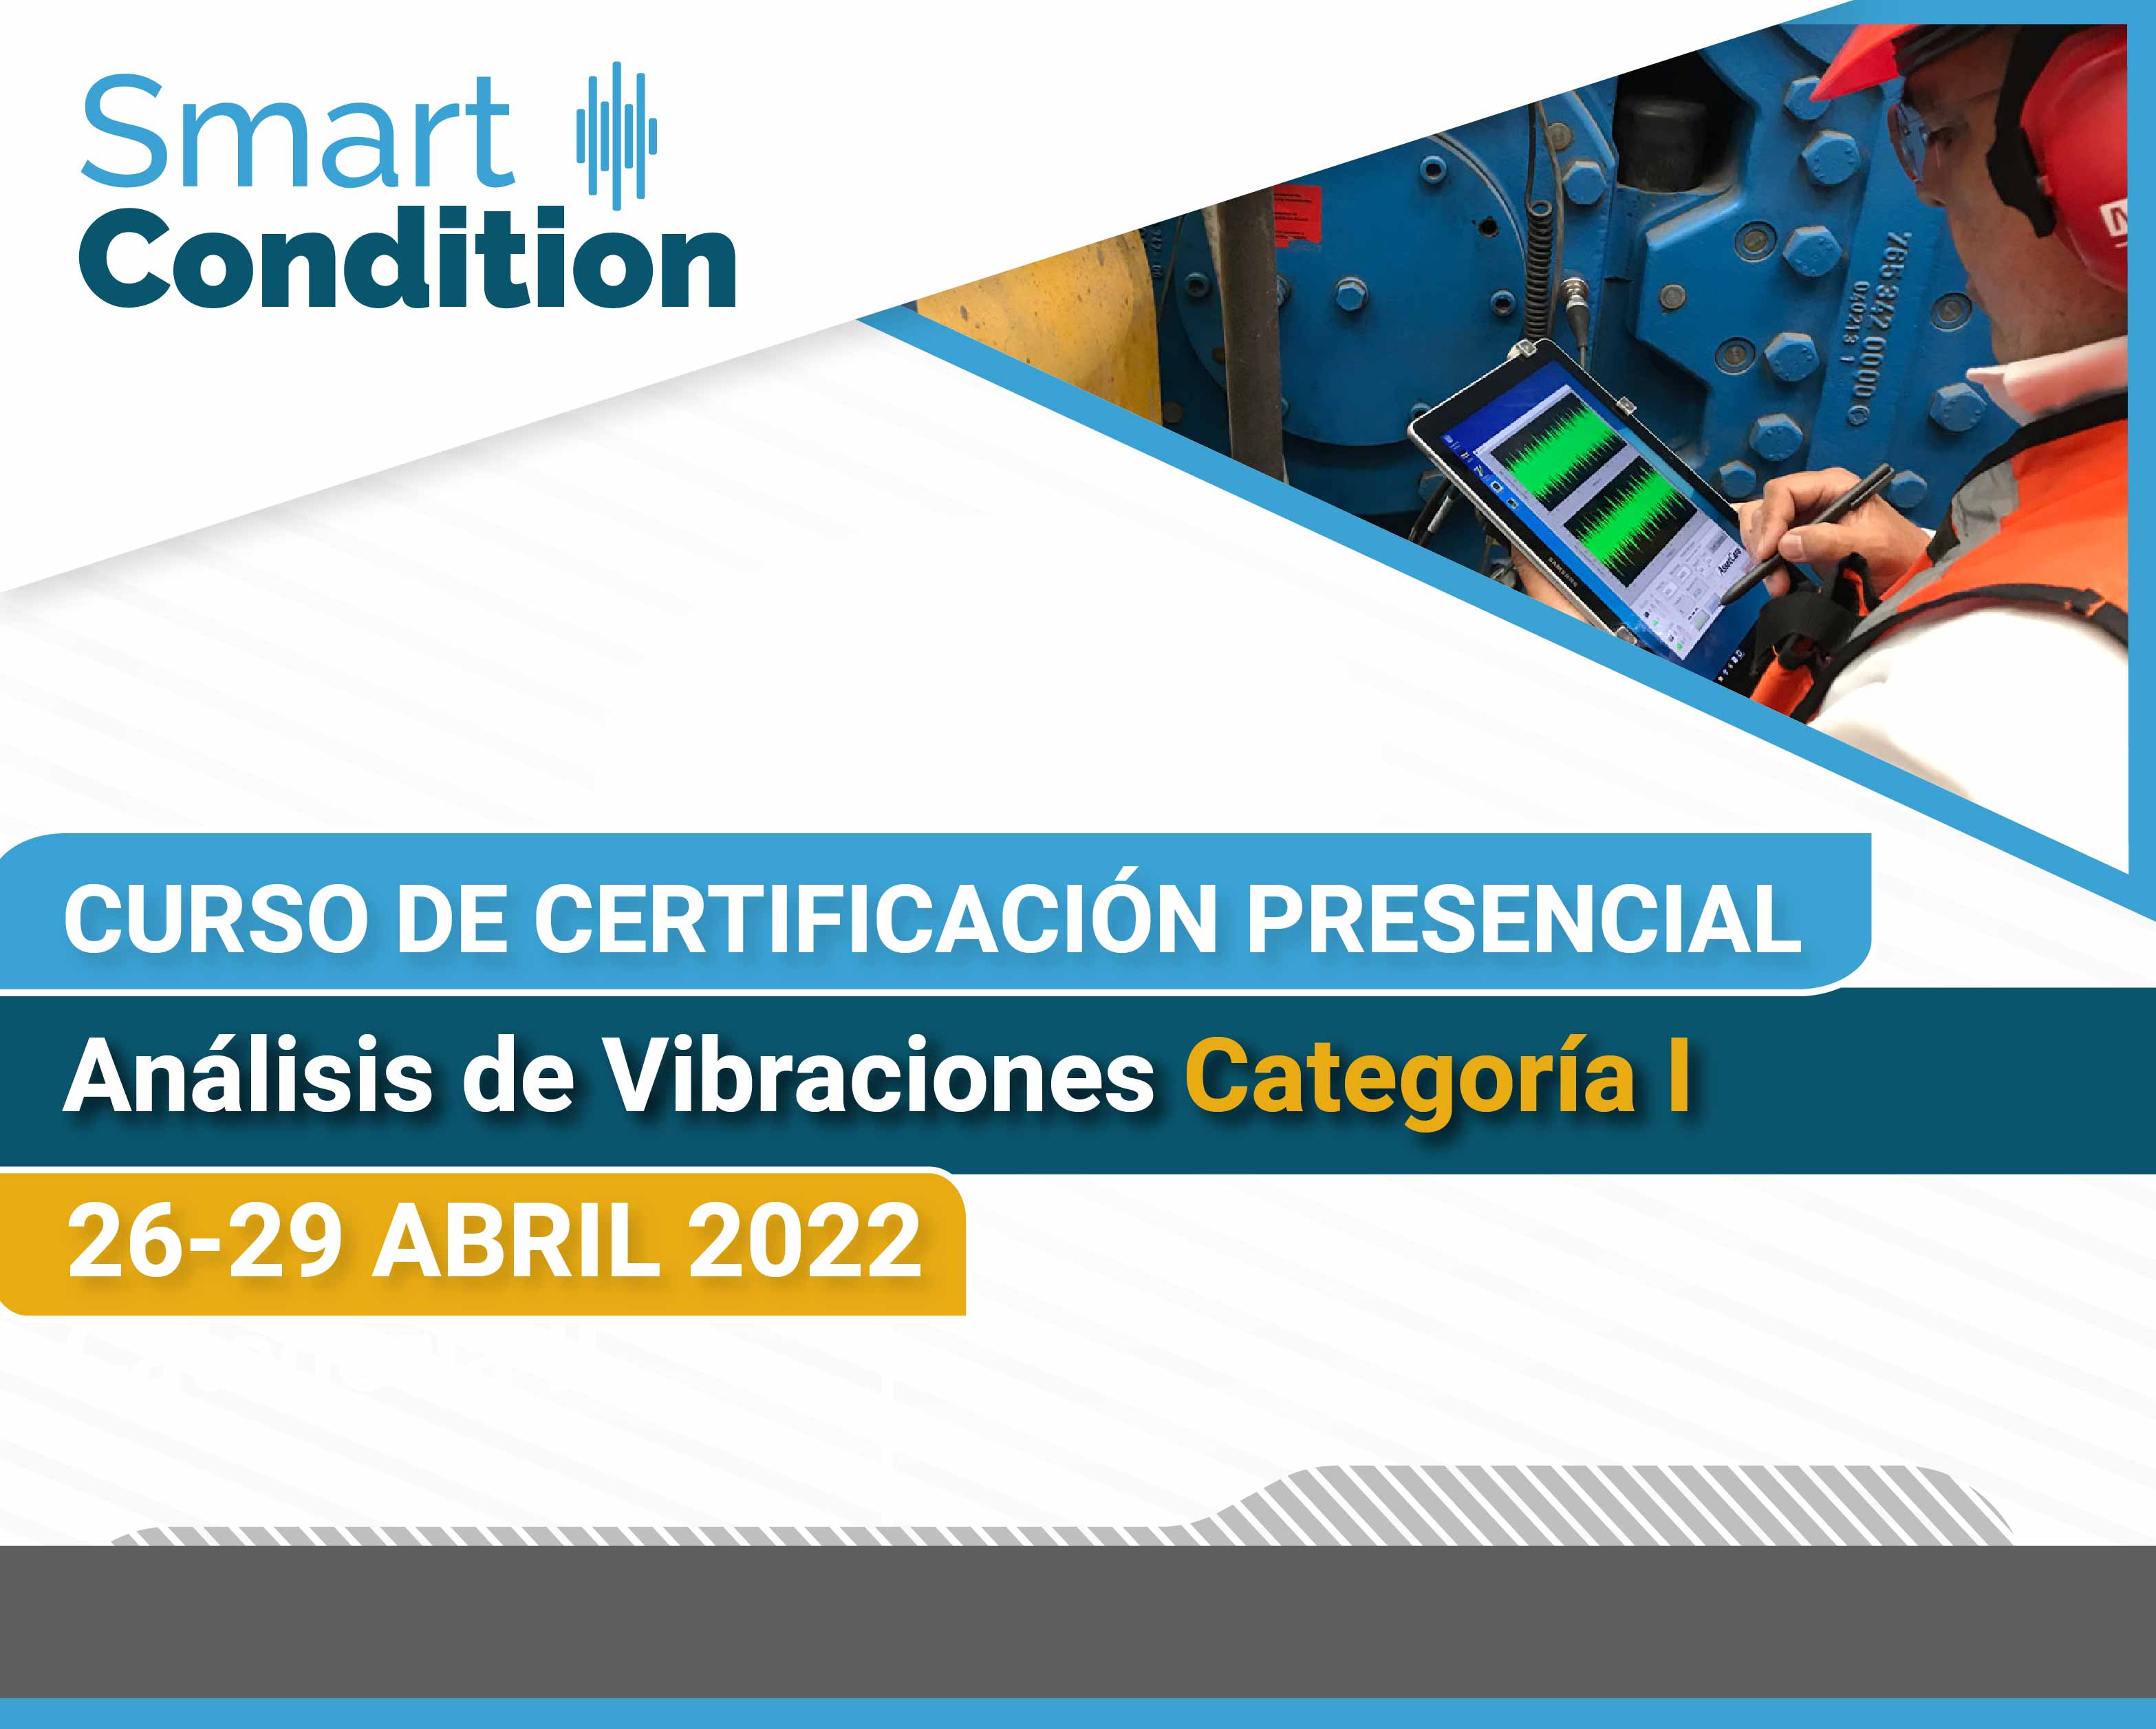 Curso de certificacion analisis de vibraciones cat I Smart Condition